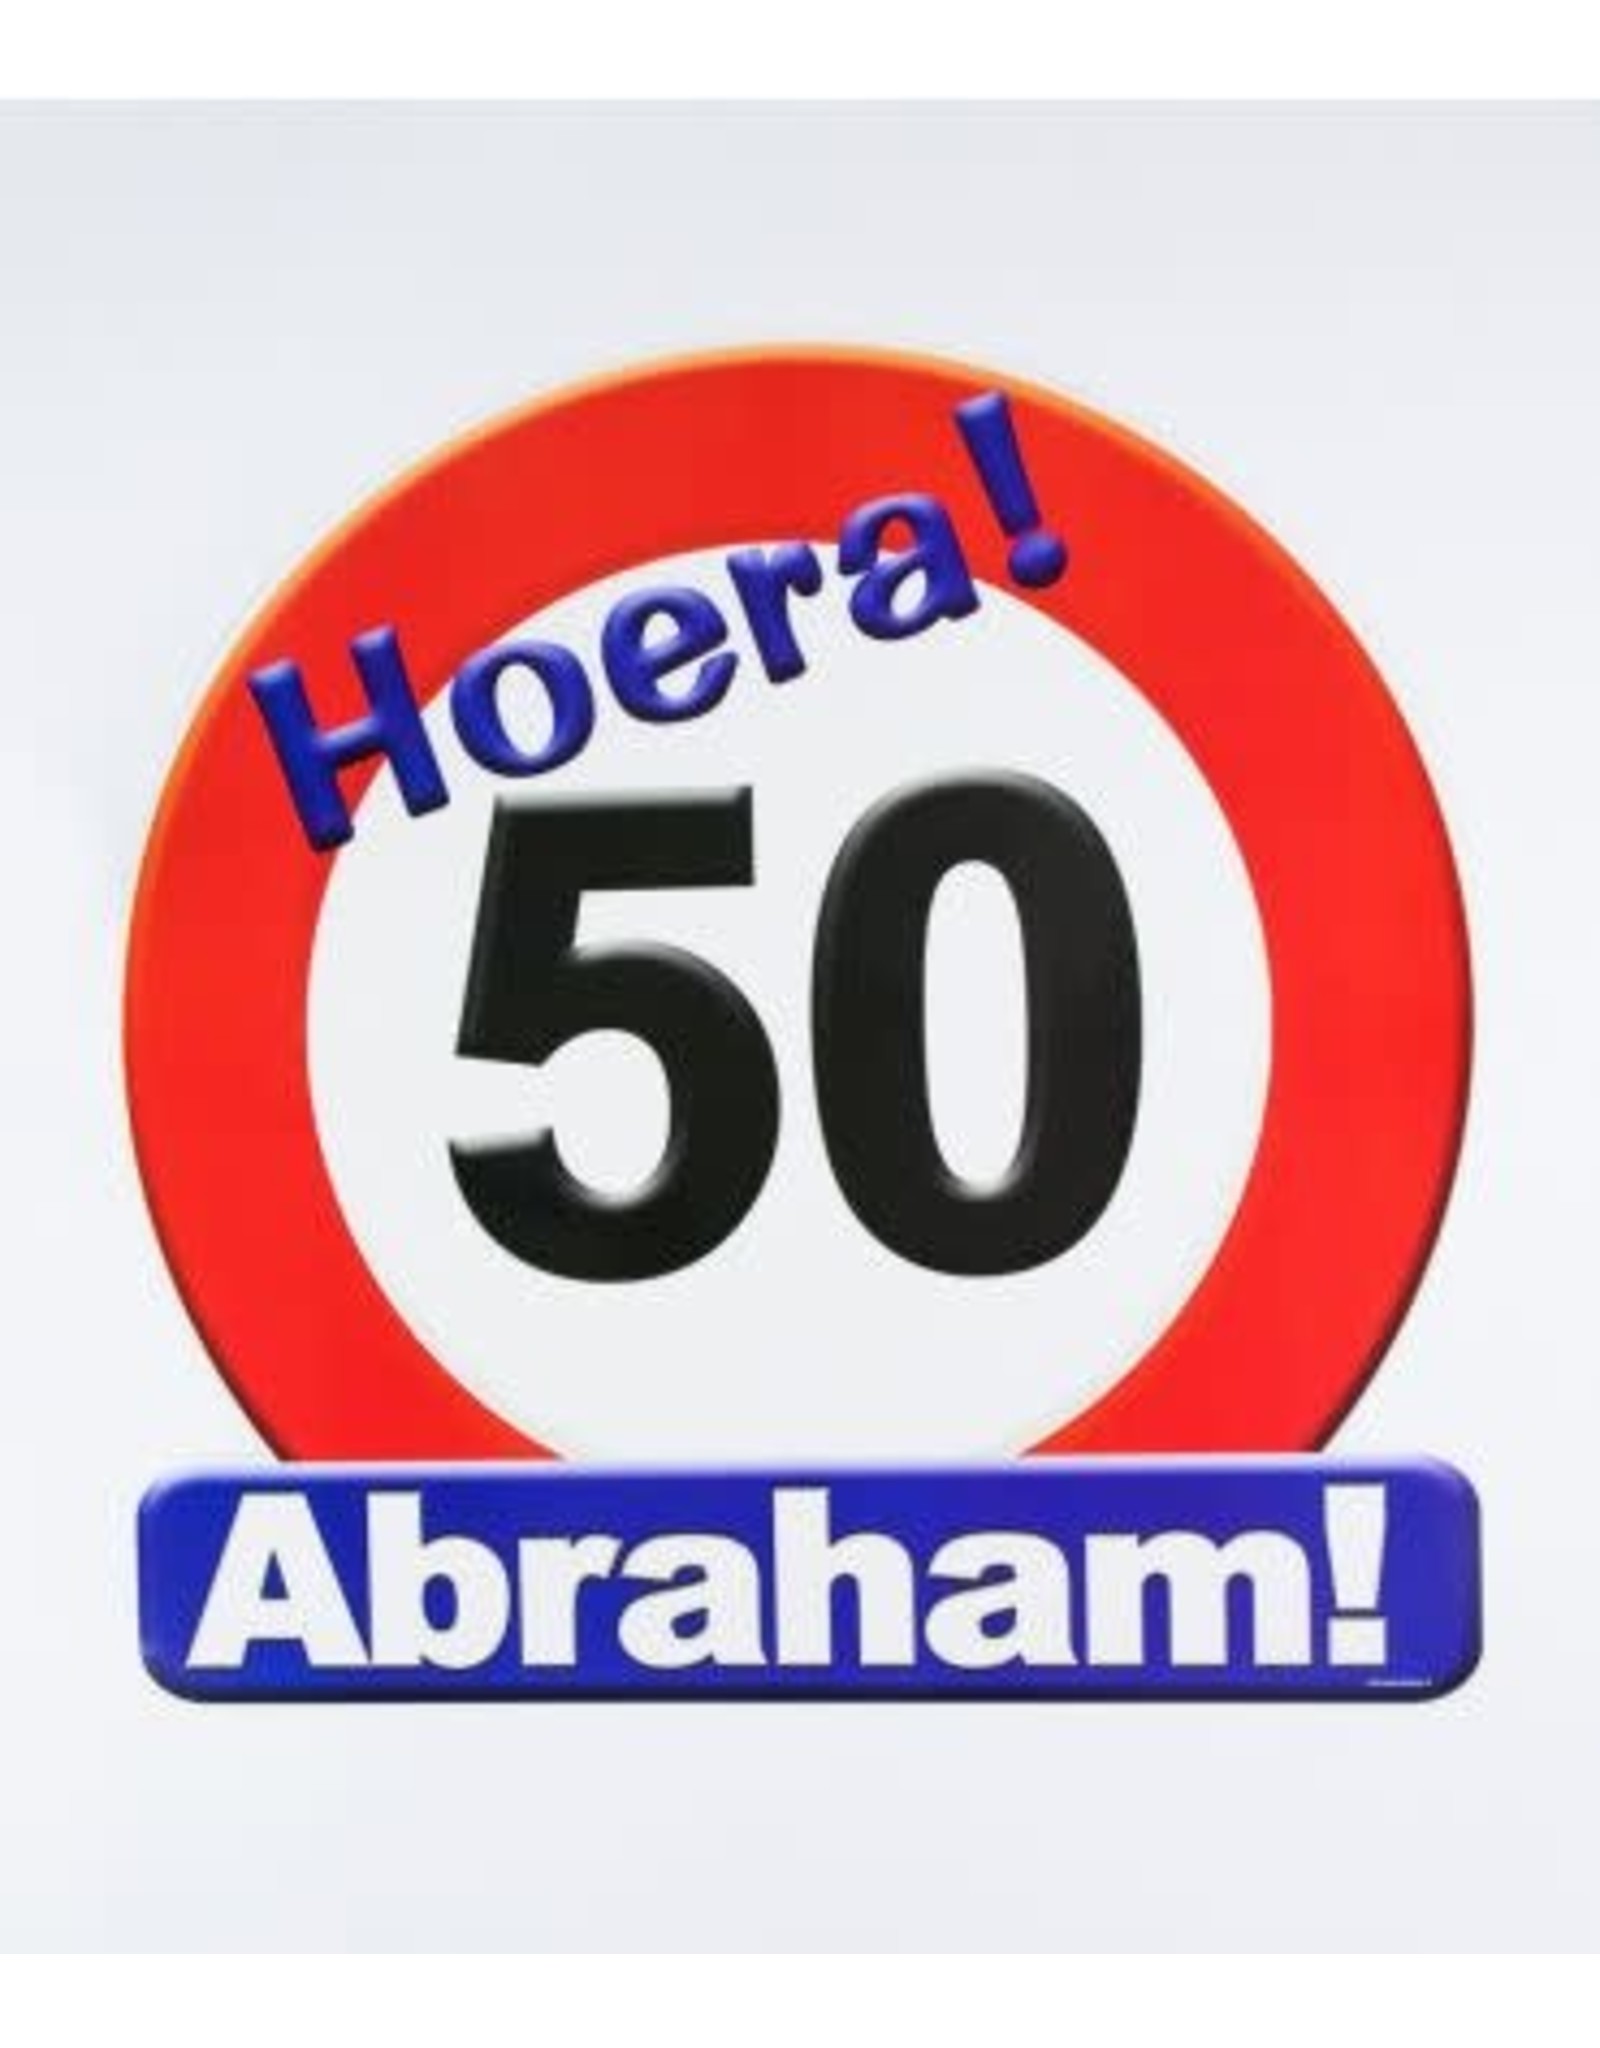 Huldeschild verkeersbord Abraham 50 jaar